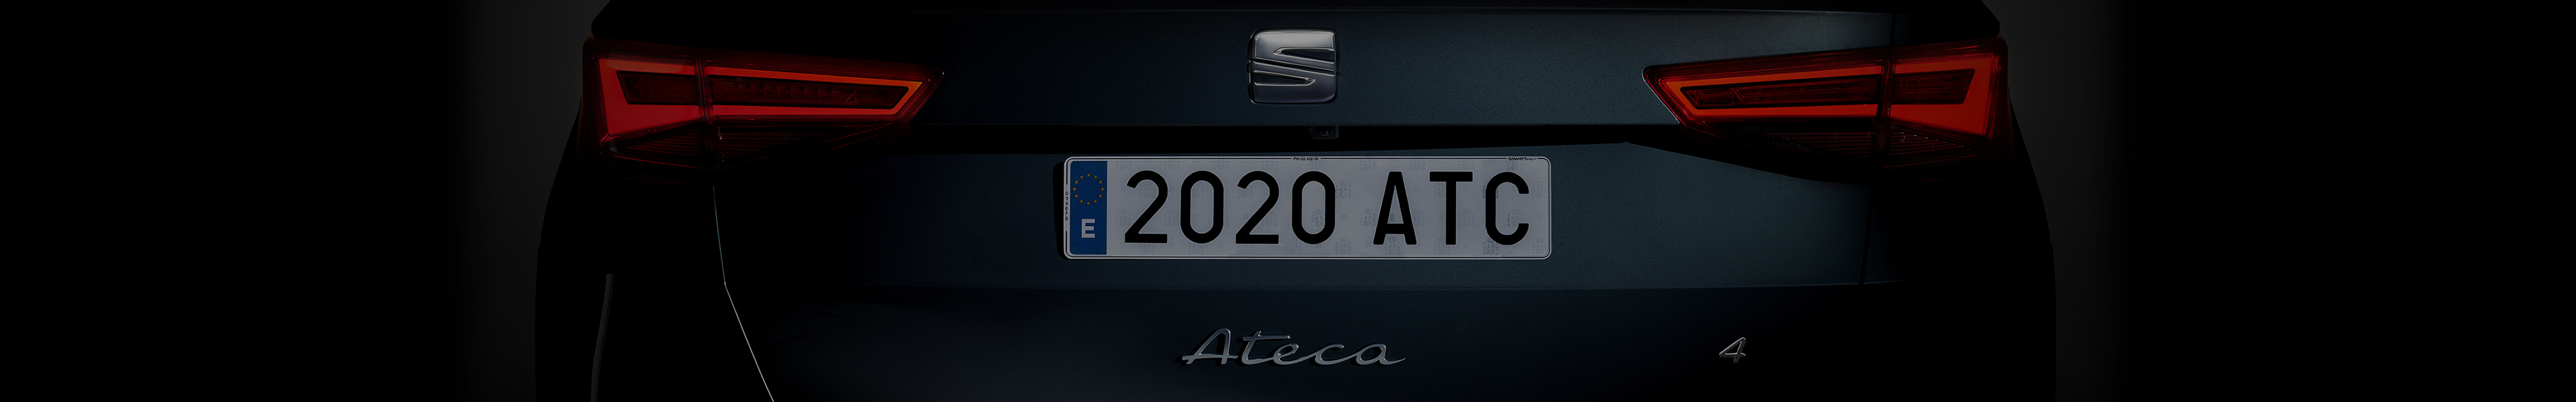 Nuova SEAT Ateca 2020